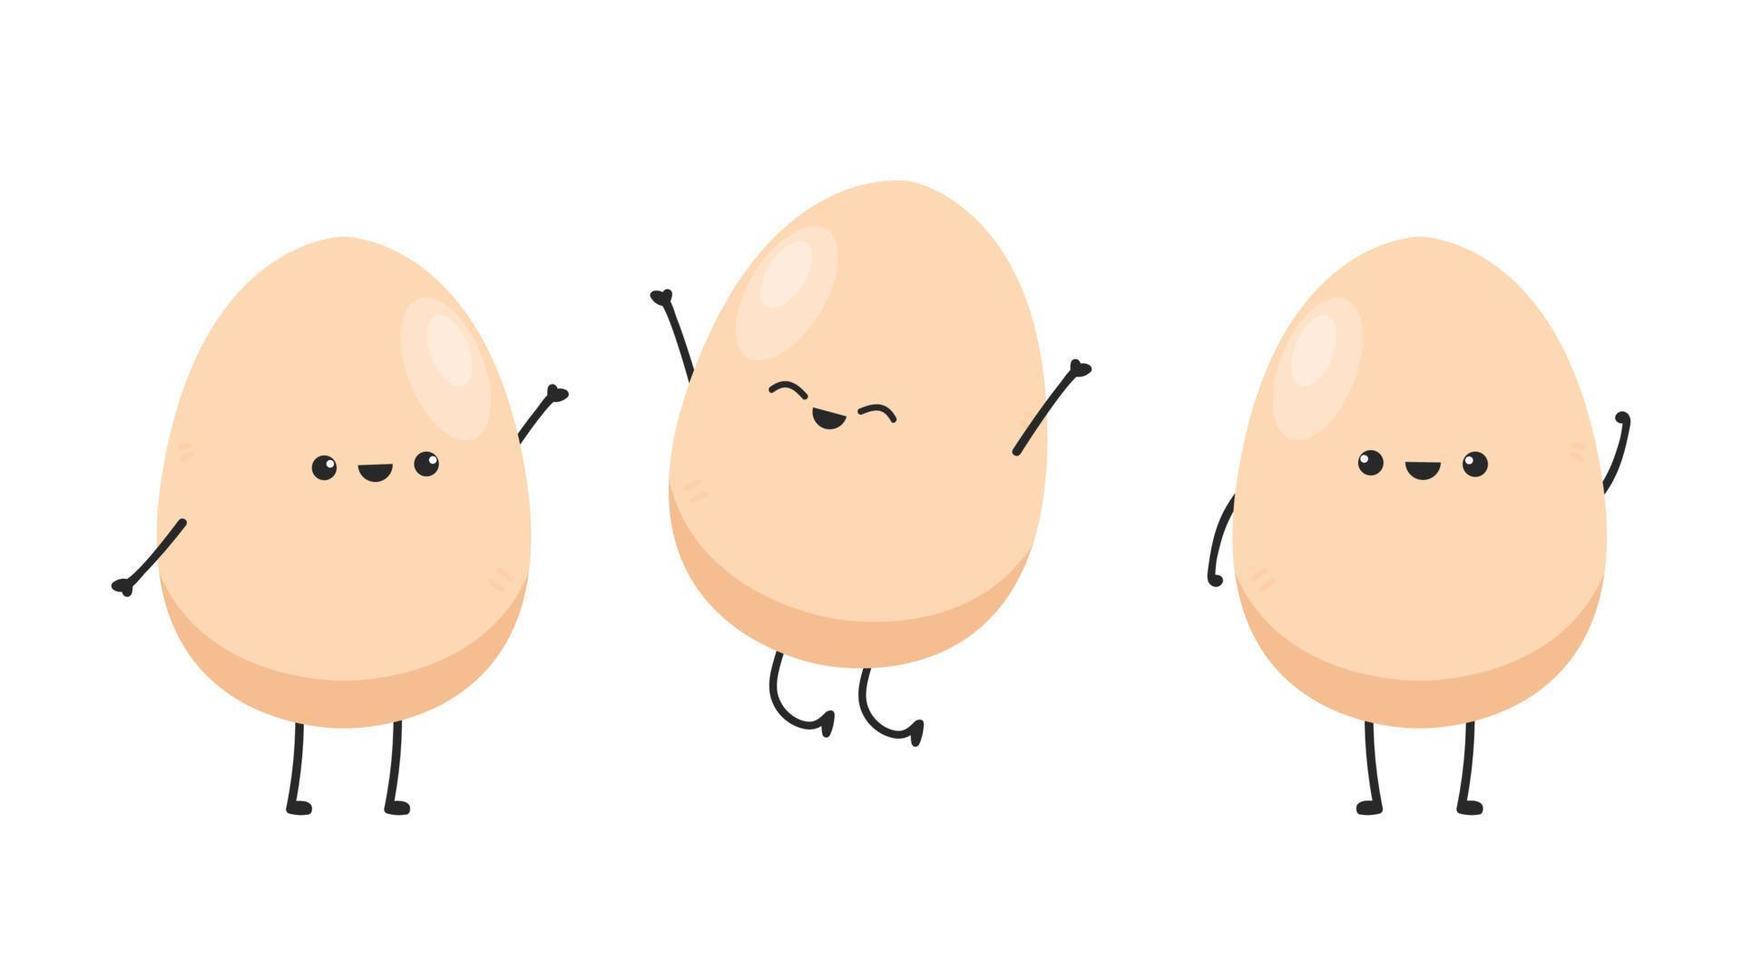 diseño de personajes de huevo. vector de huevo sobre fondo blanco.